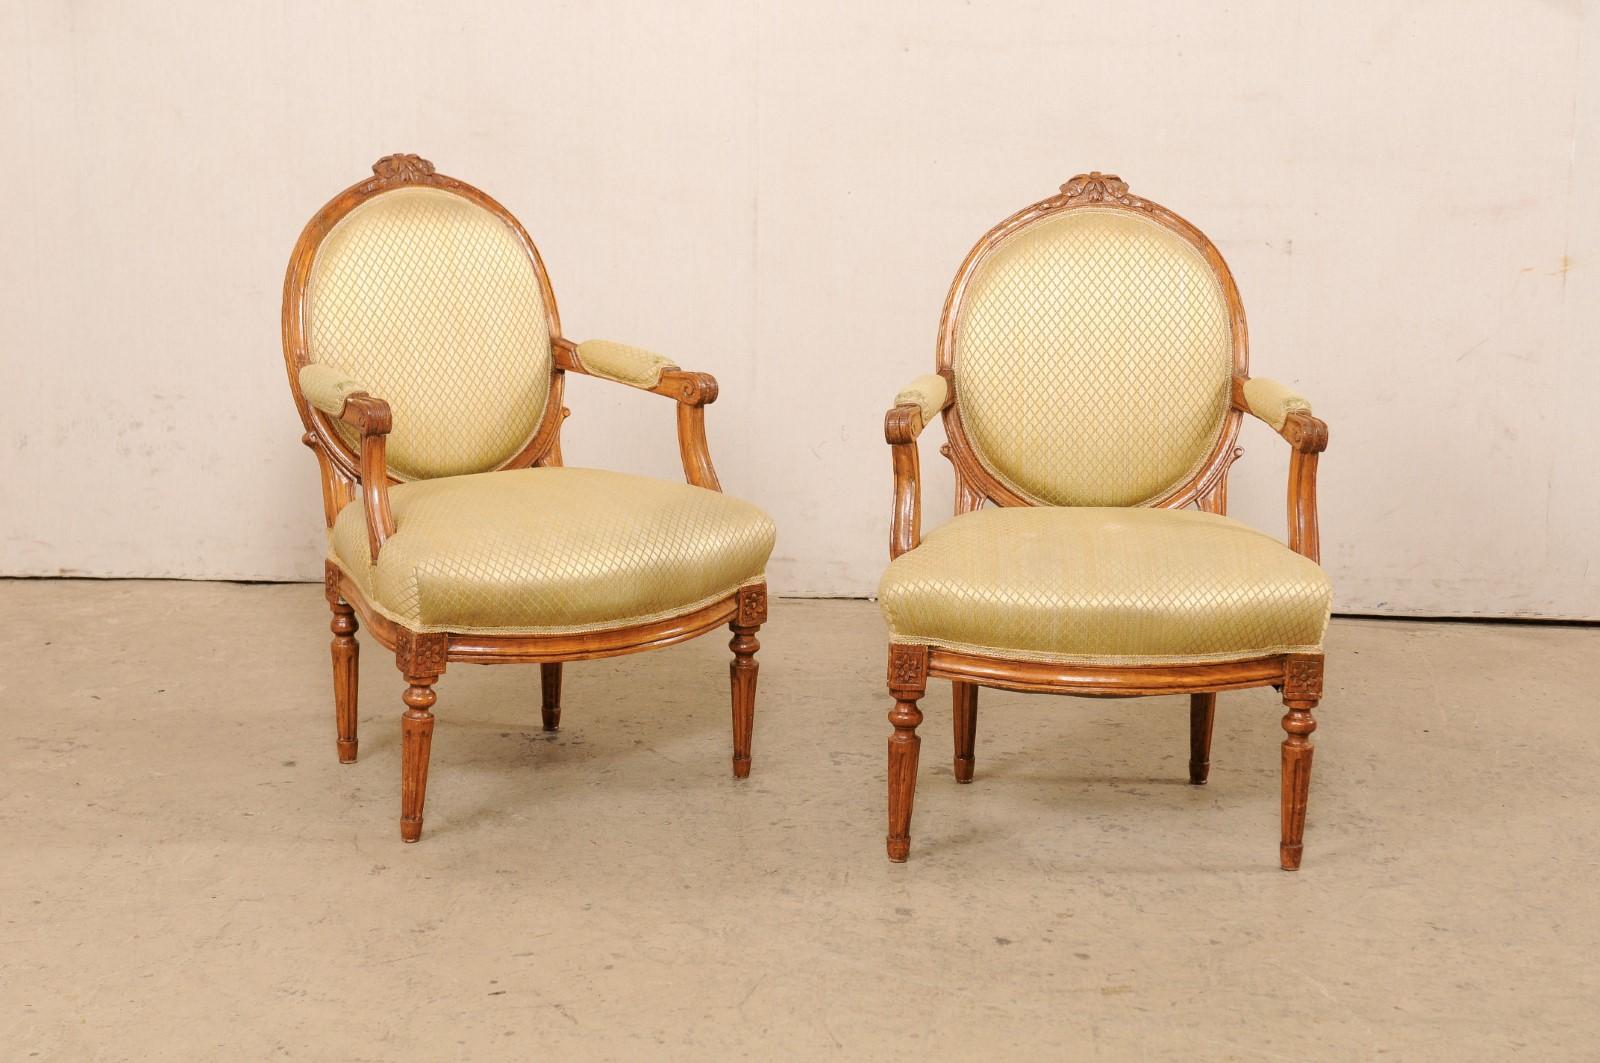 Paire de chaises de style Louis XVI en bois sculpté et tapissé, datant du milieu du 20e siècle. Cette paire de fauteuils français du milieu du siècle présente des dossiers rembourrés de forme ovale dans un cadre en bois accentué par une garniture